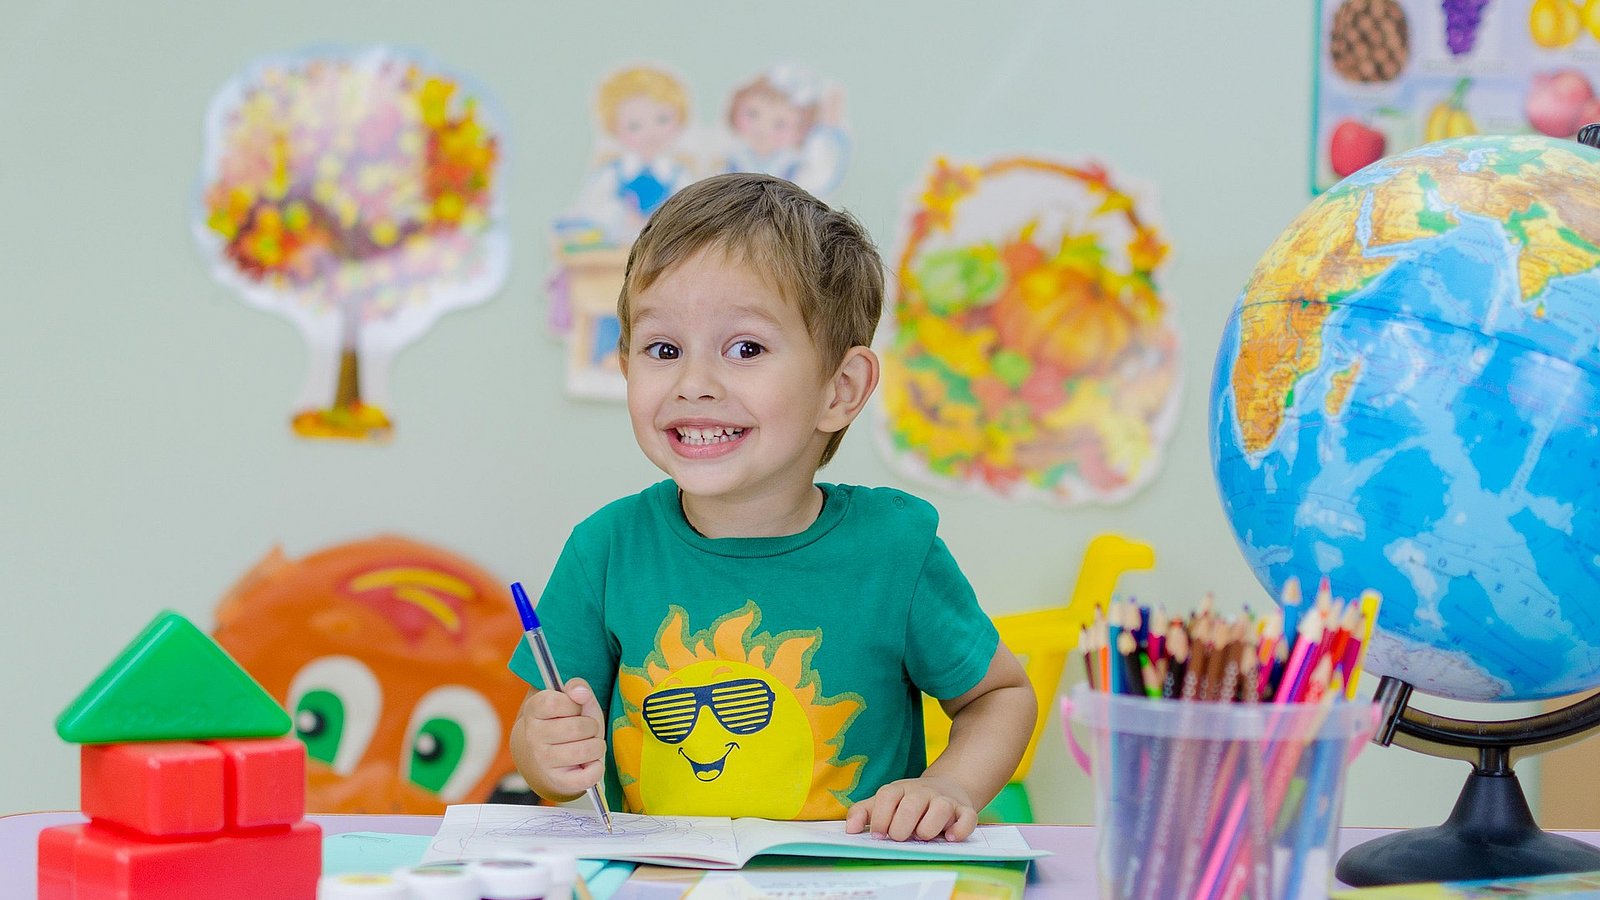 Kleiner Schuljunge sitzt am Schreibtisch, vor ihm ein aufgeschlagenes Lehrbuch, bunte Stifte und ein Globuls. Er lacht erwartungsvoll in die Kamera.